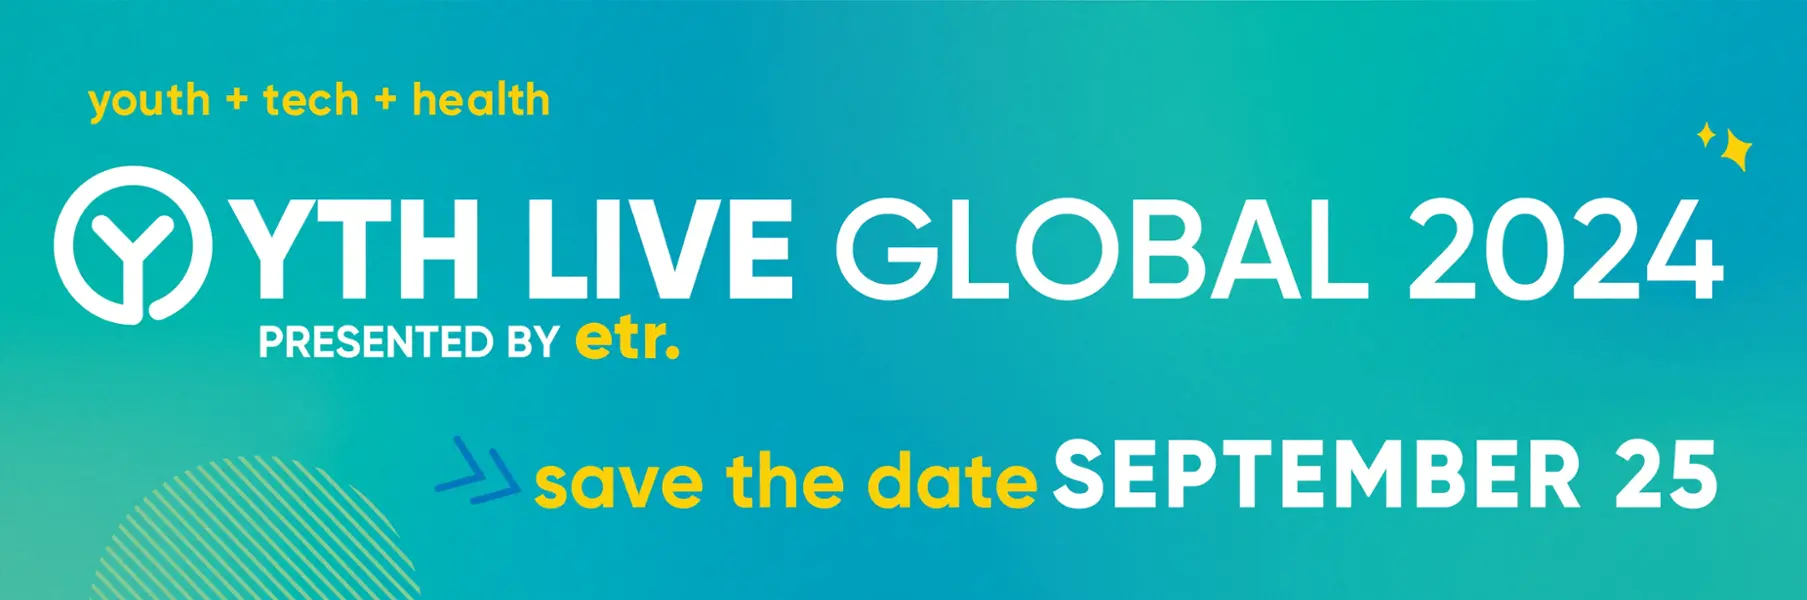 YTH Live Global 2024 banner